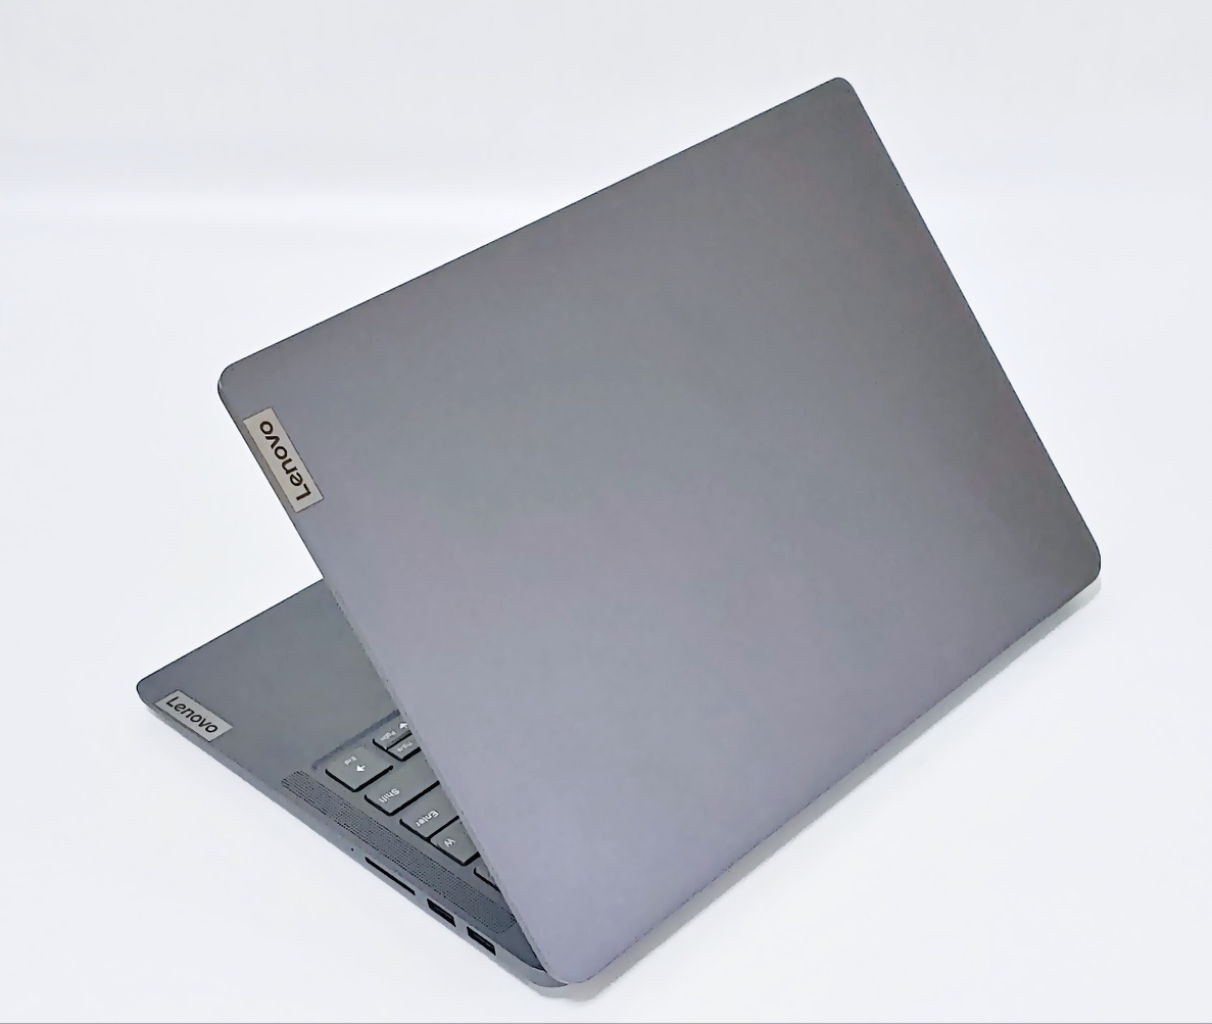 MX450 라이젠5 5600U 14인치 노트북 PC